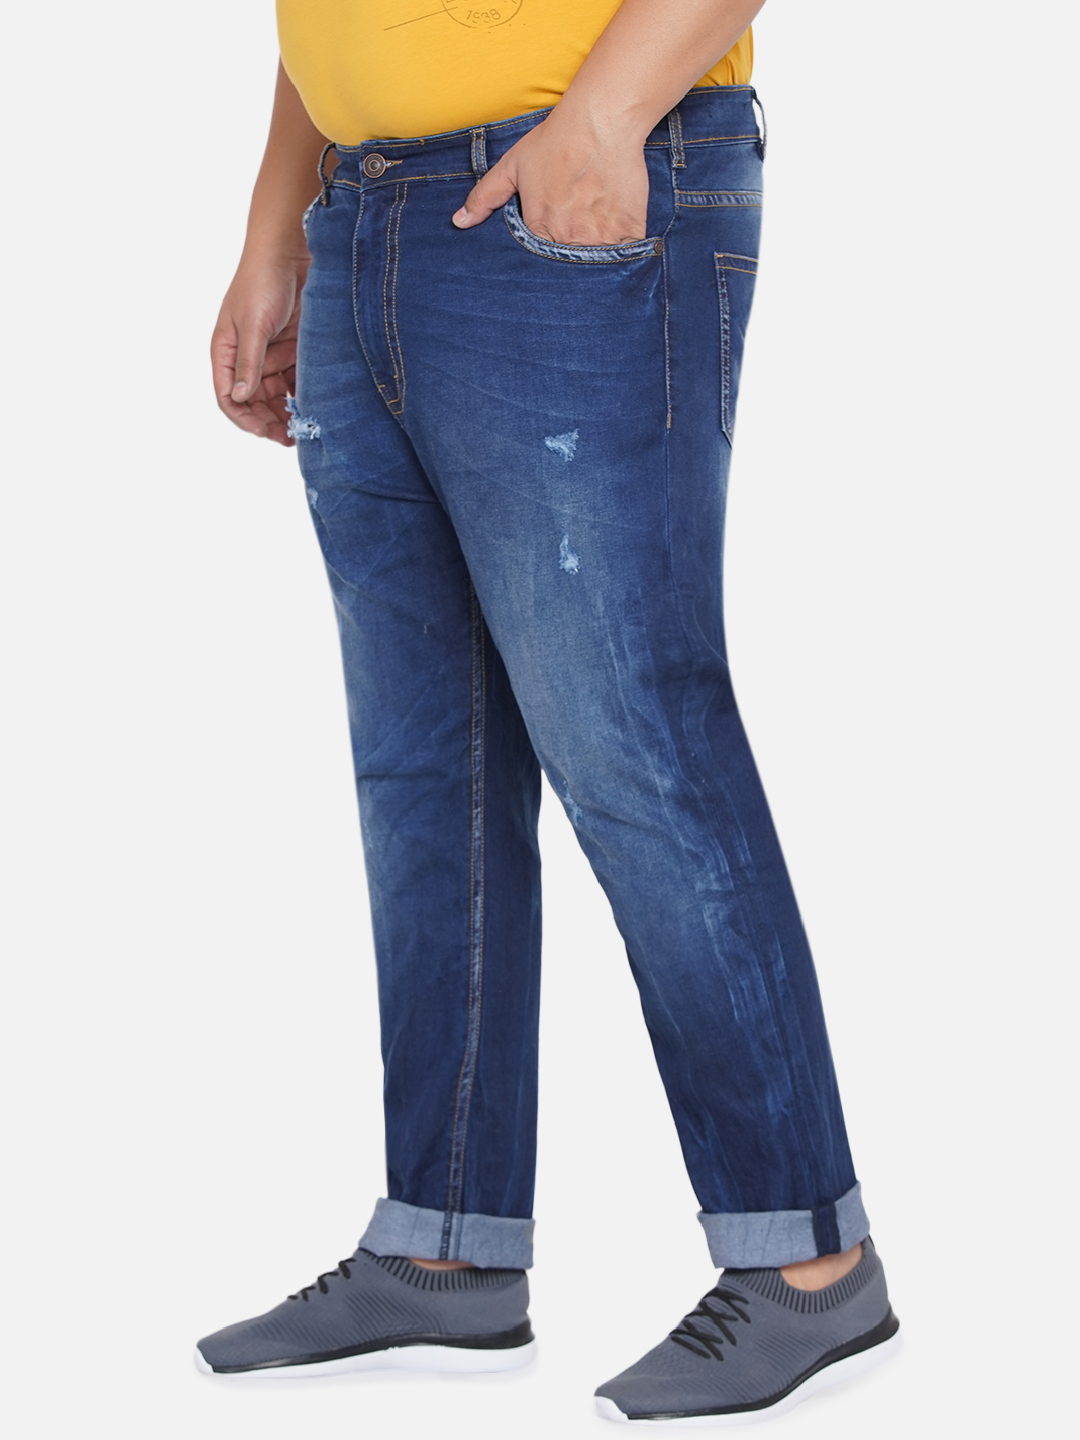 bottomwear/jeans/JPJ12202/jpj12202-4.jpg